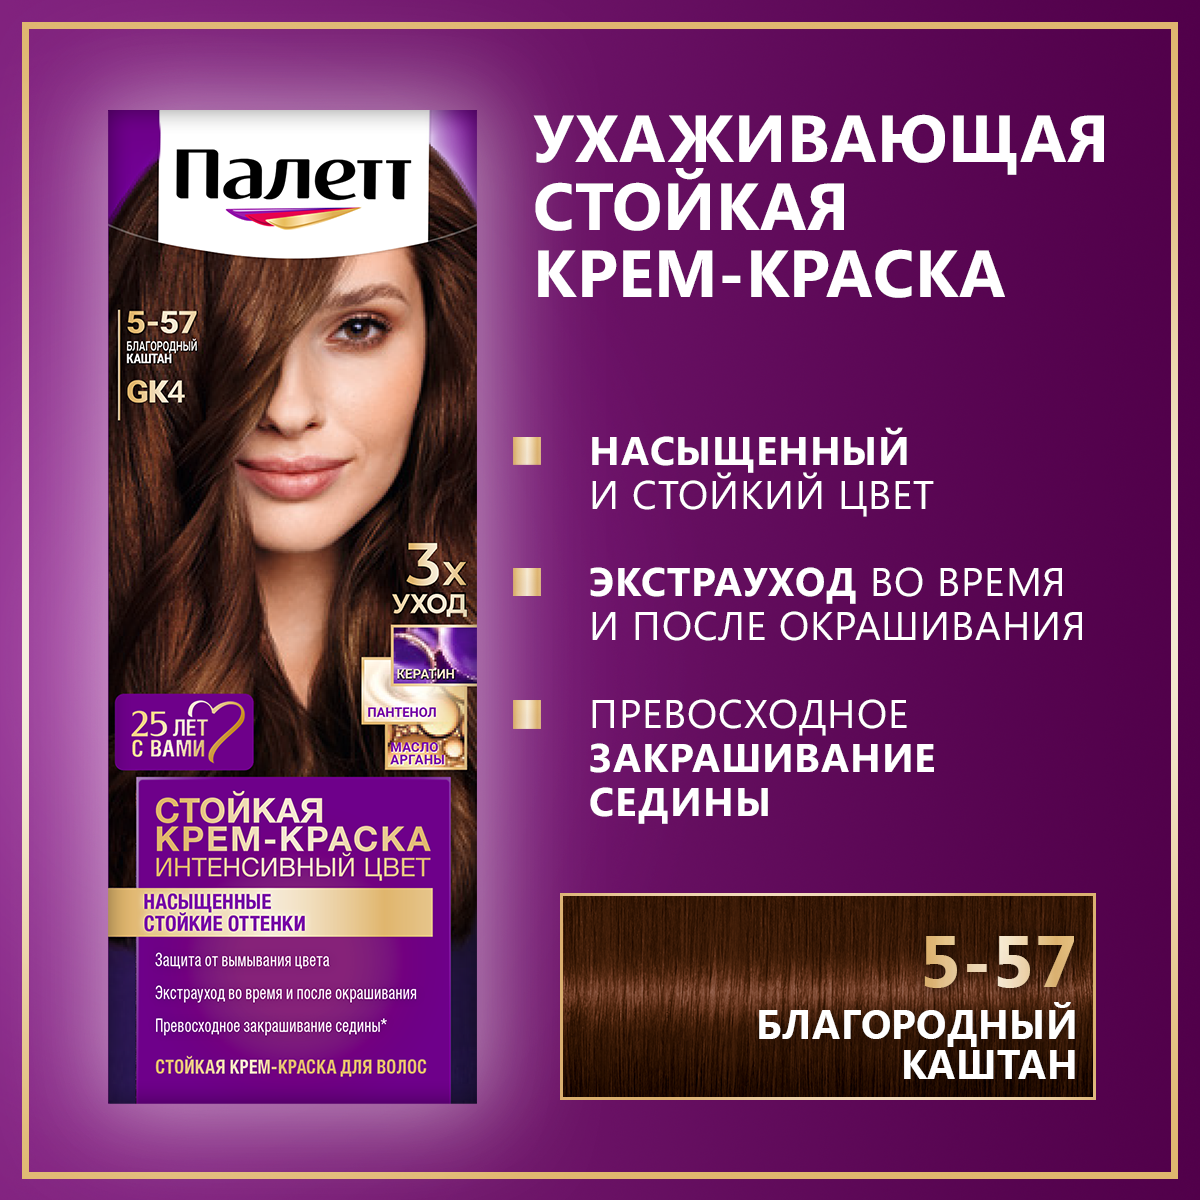 Стойкая крем-краска для волос Палетт Интенсивный цвет 5-57 (GK4) Благородный каштан, 110мл